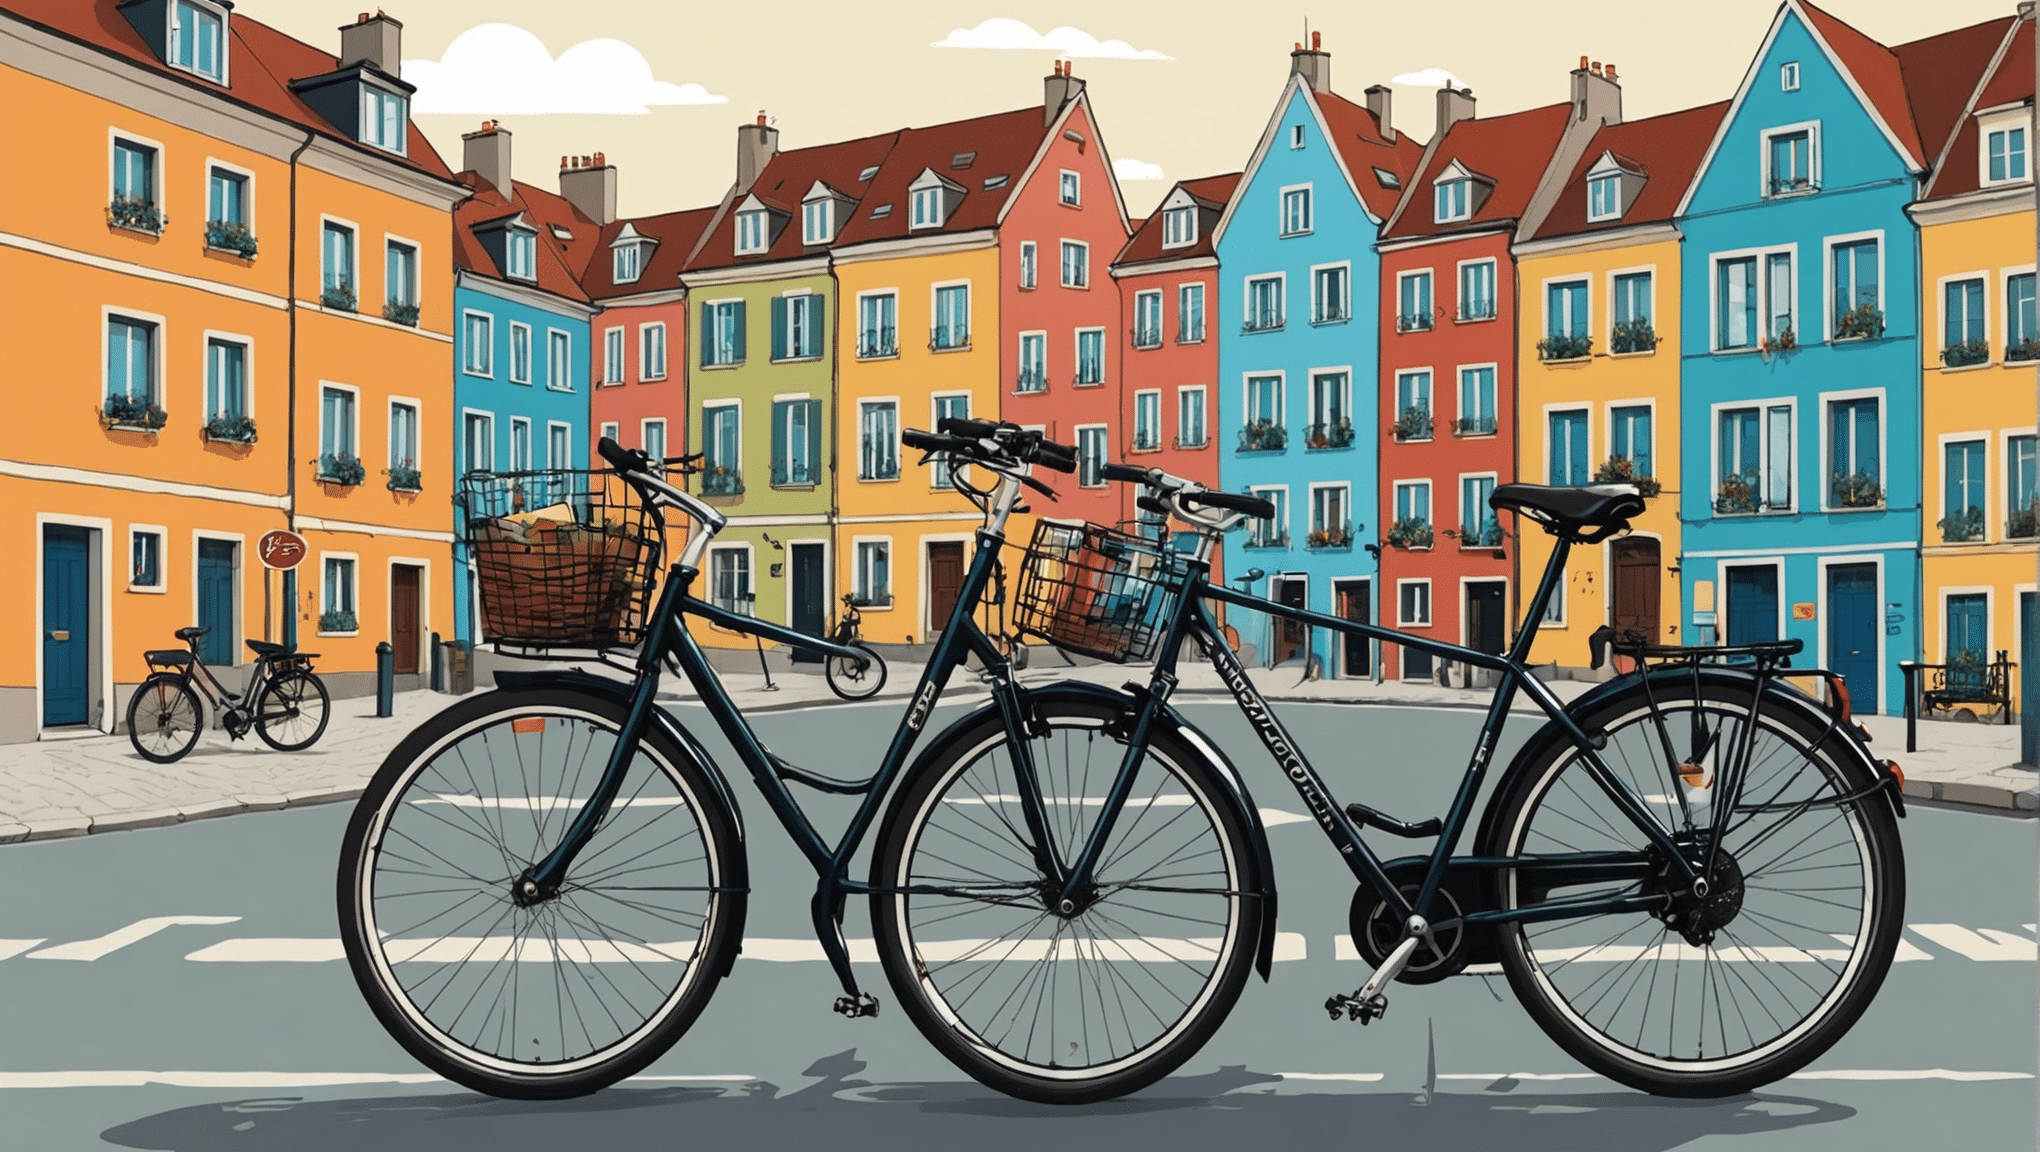 हमारे संपूर्ण गाइड के साथ यूरोप में साइकिल यात्रा के प्रेमियों के लिए अवश्य देखने योग्य स्थलों की खोज करें। लुभावने परिदृश्य और अनोखे अनुभव आपका इंतजार कर रहे हैं!